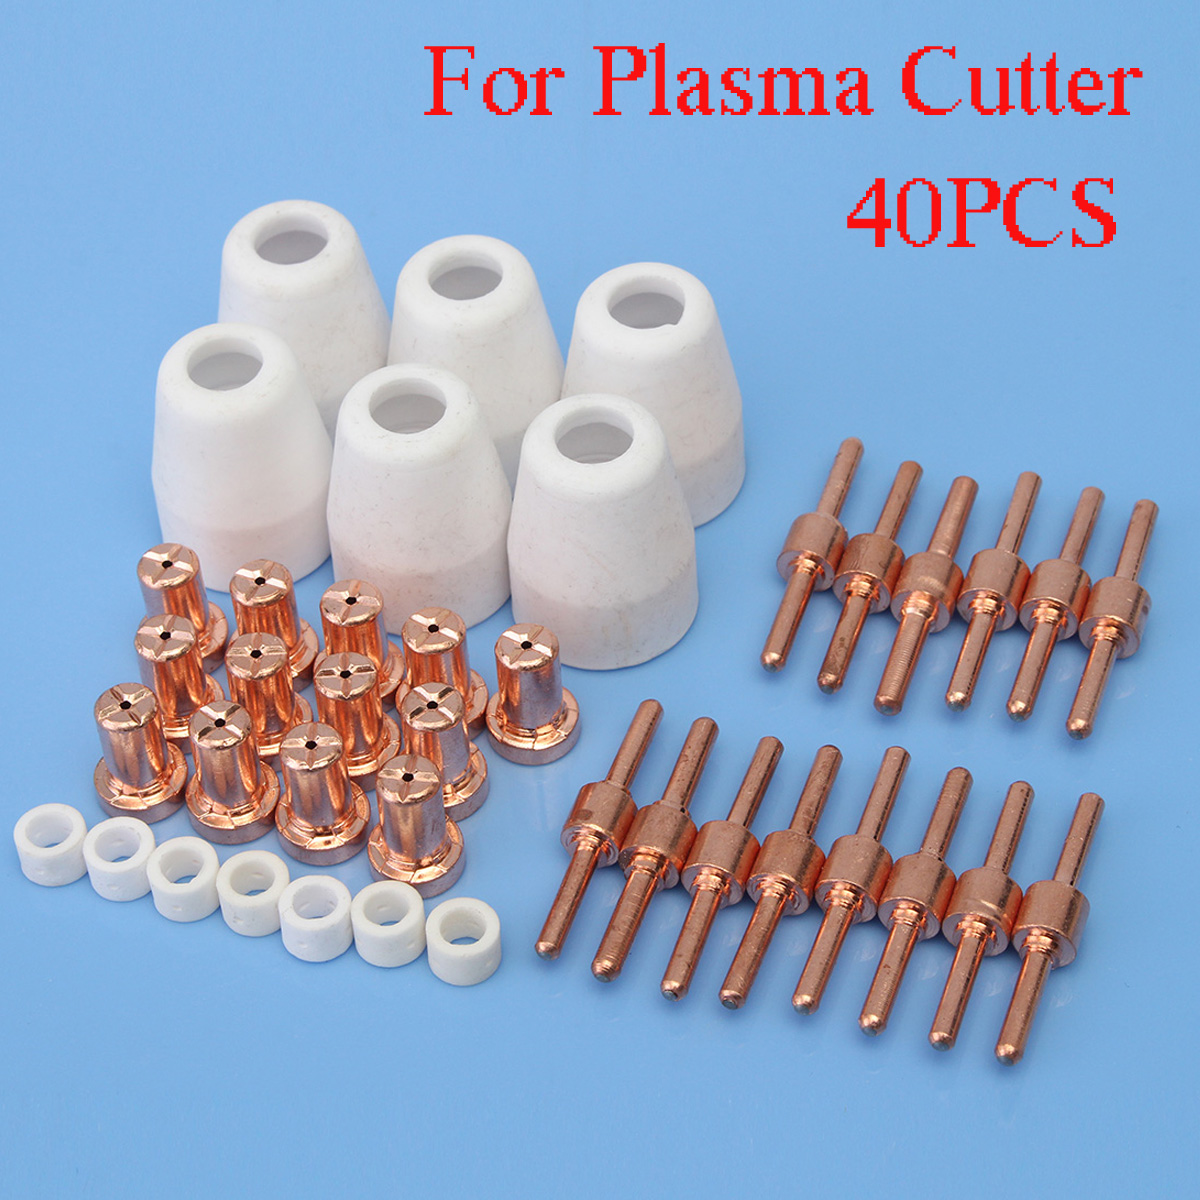 40PCS-Consumables-For-Plasma-Cutter-40D-CUT40-Welding-Machine-1163236-1